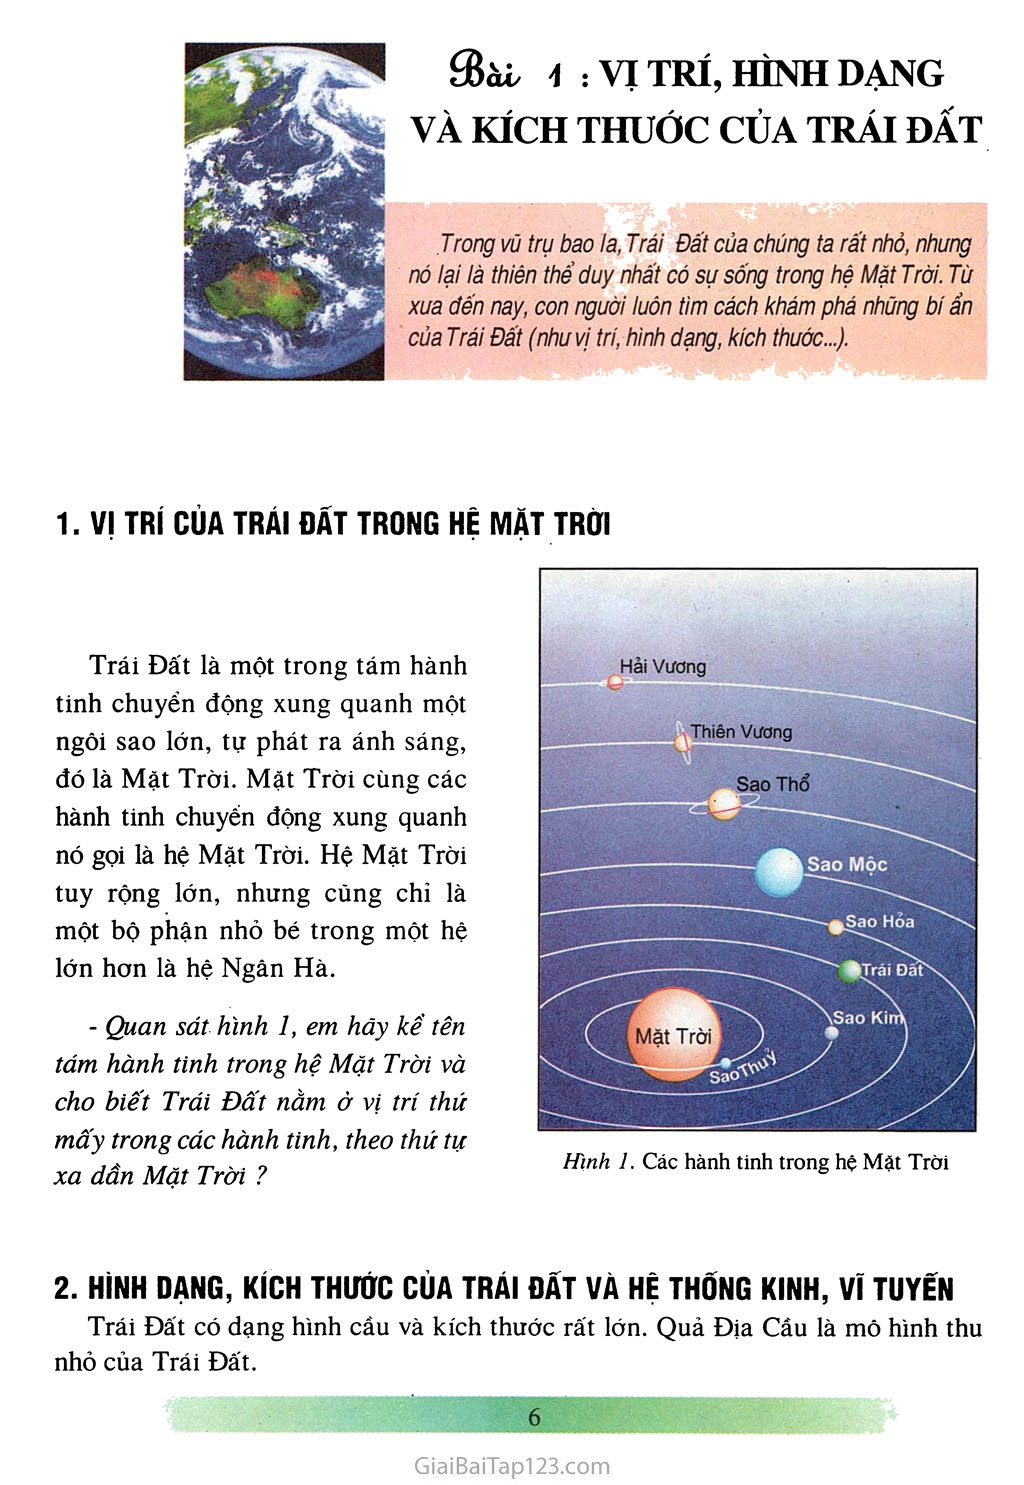 Bài 1: Vị trí, hình dạng và kích thước của Trái Đất (1 tiết) trang 2